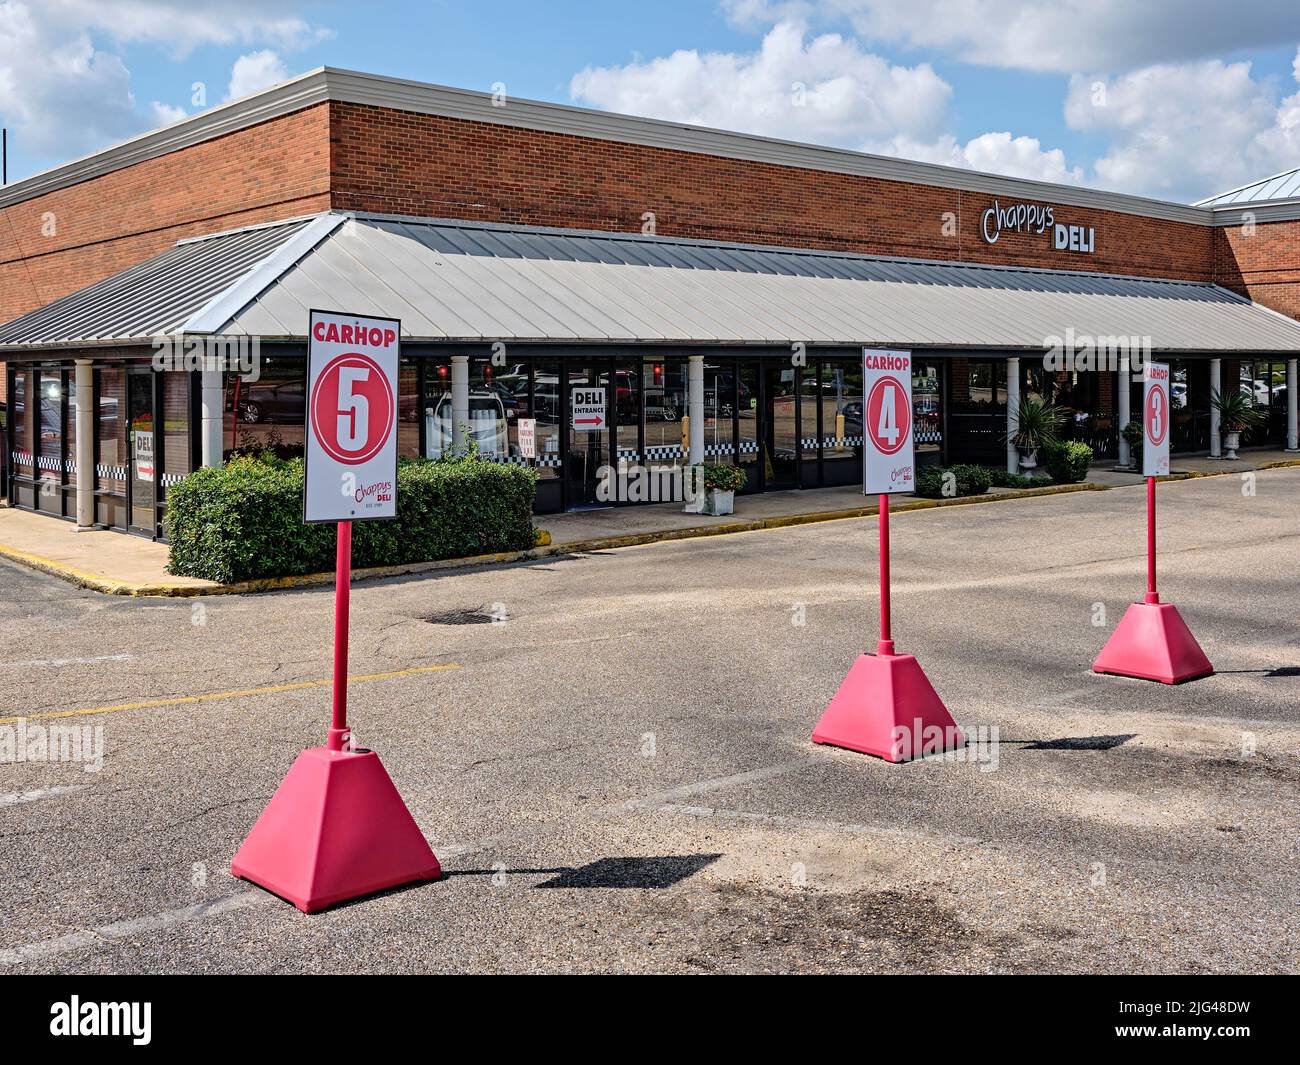 Restaurante con estacionamiento para llevar llamado carhop o car hop en Chappy's Deli en Montgomery Alabama, Estados Unidos. Foto de stock